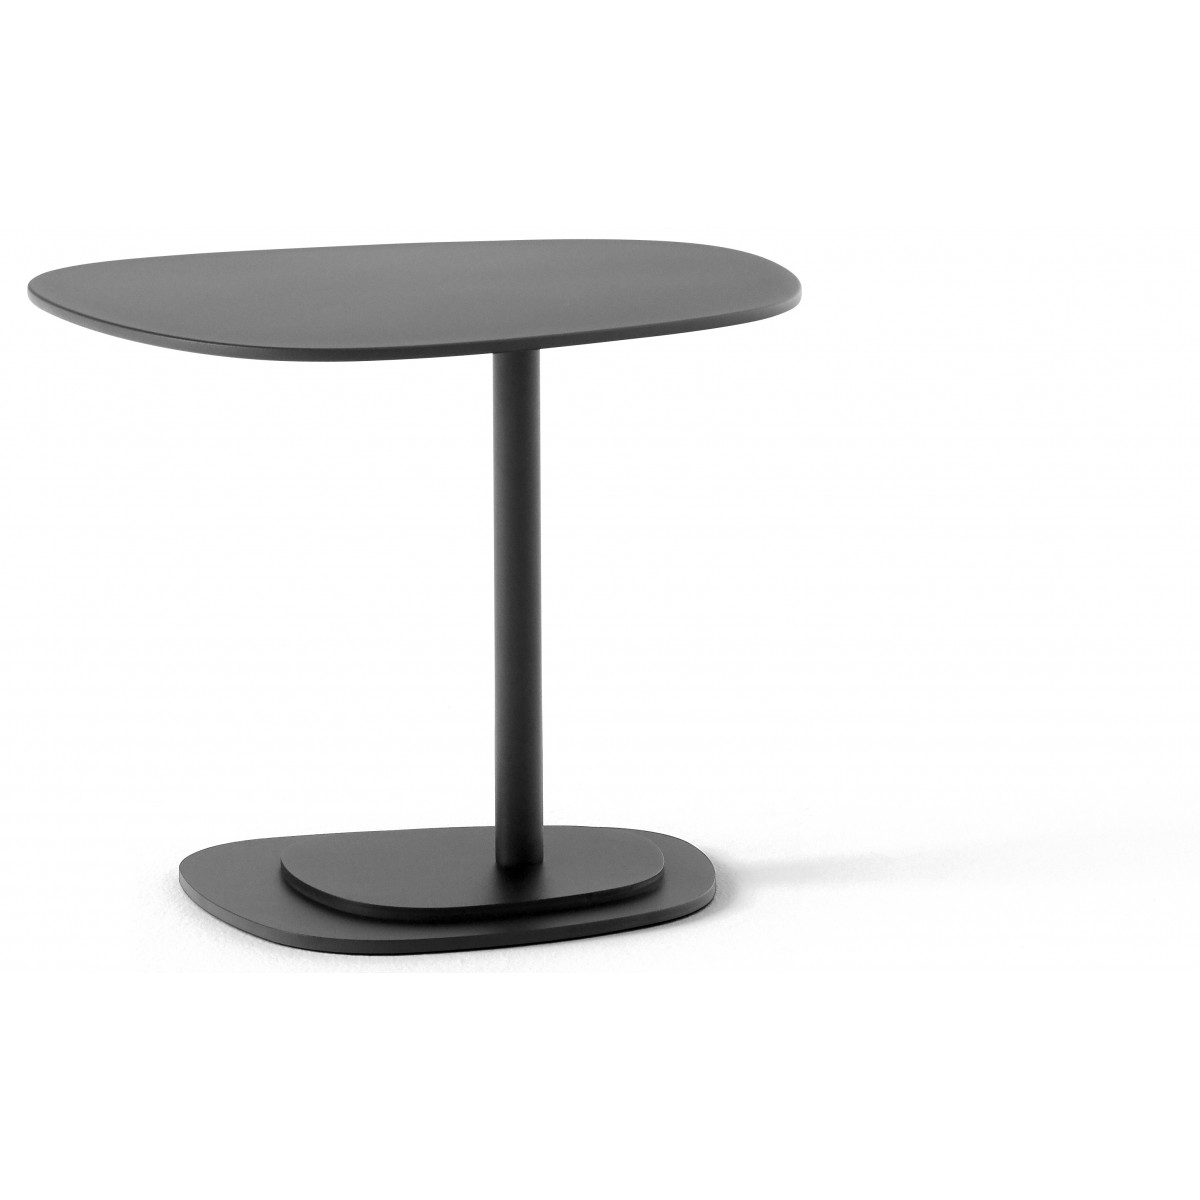 H38 cm - Insula Picolo 5198 table